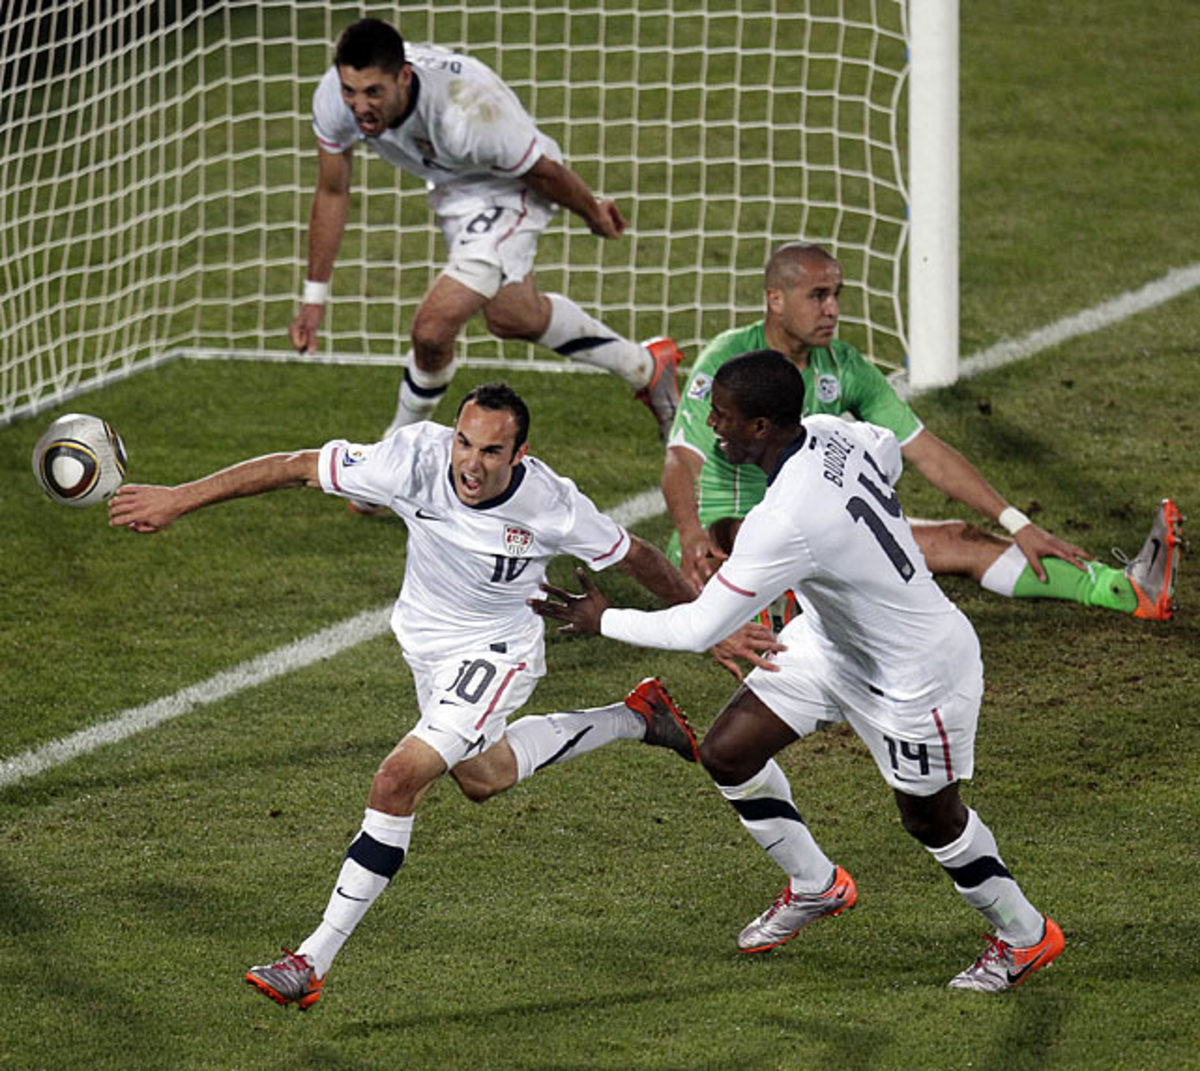 USA 1, Algeria 0